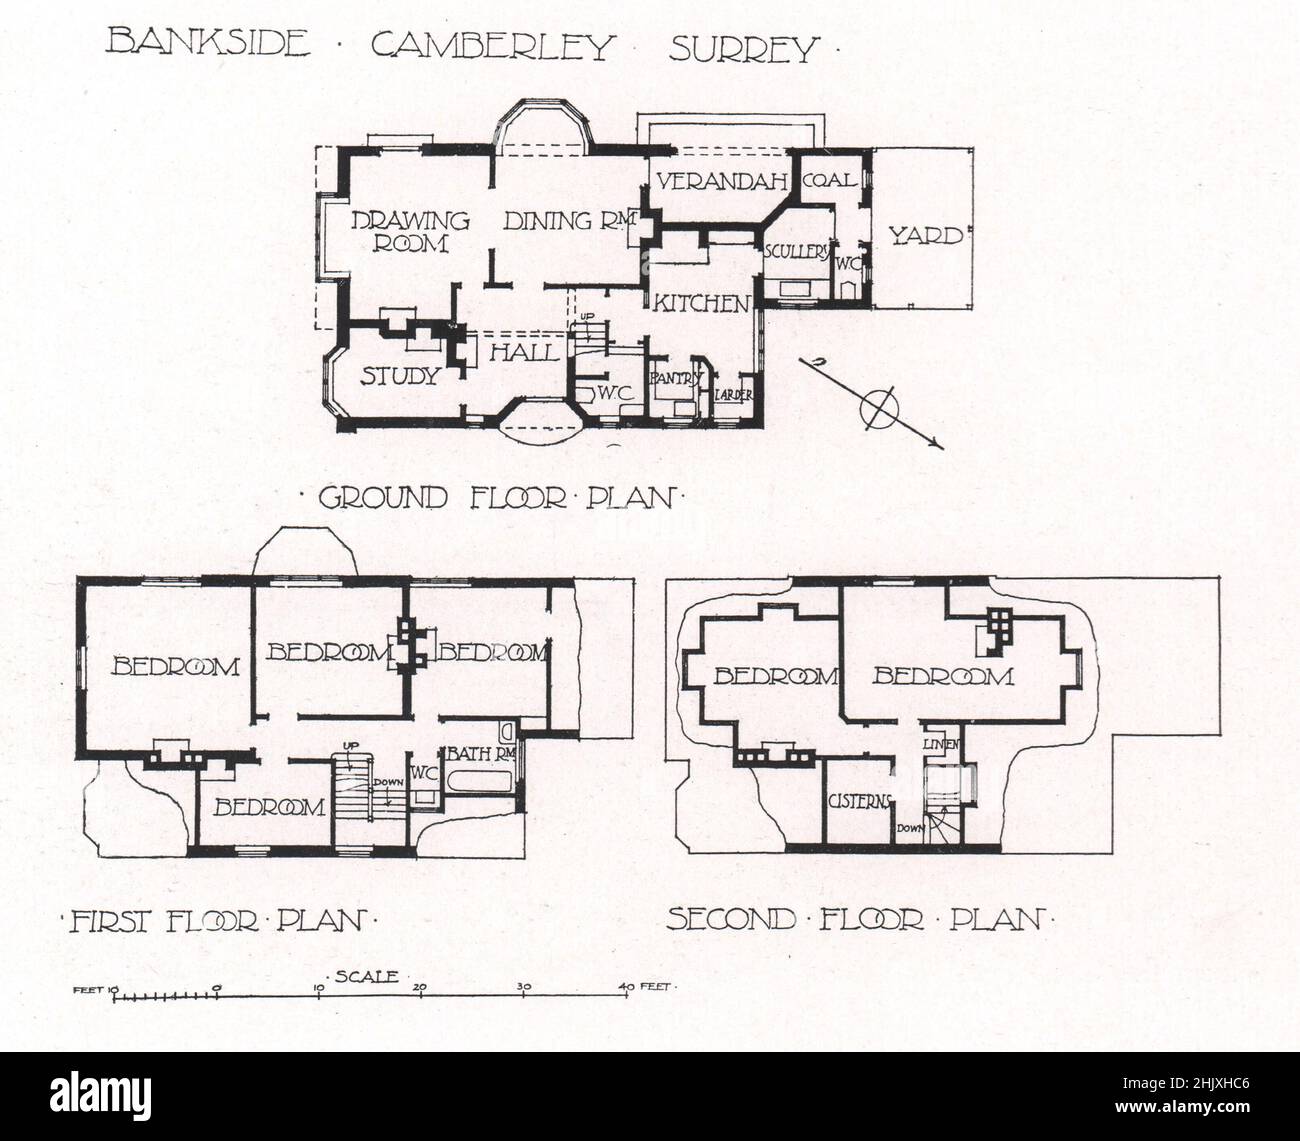 Bankside - Camberley Surrey - Plan du rez-de-chaussée, Plan du premier étage, Plan du deuxième étage. H. R. & B. A. Poulter, Architectes (1908) Banque D'Images